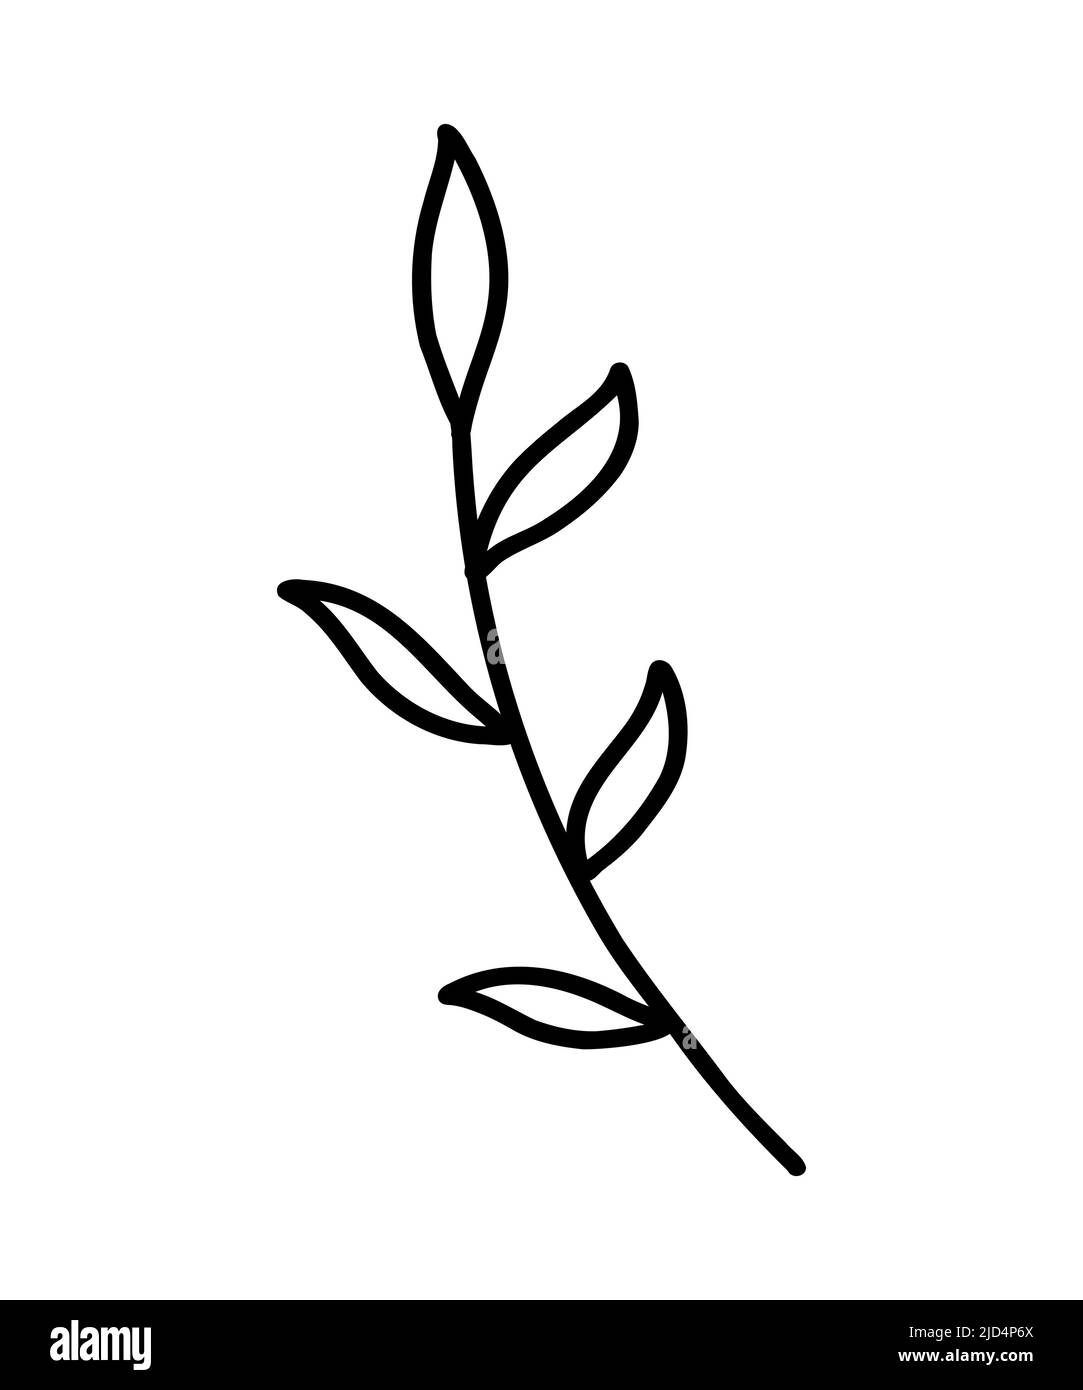 Icona ramo vettore. Ramo di albero. Icona del contorno di un ramo di albero, clip art, stile di doodle. Disegno a mano. Ramo decorativo floreale di una pianta con foglie. Illustrazione Vettoriale